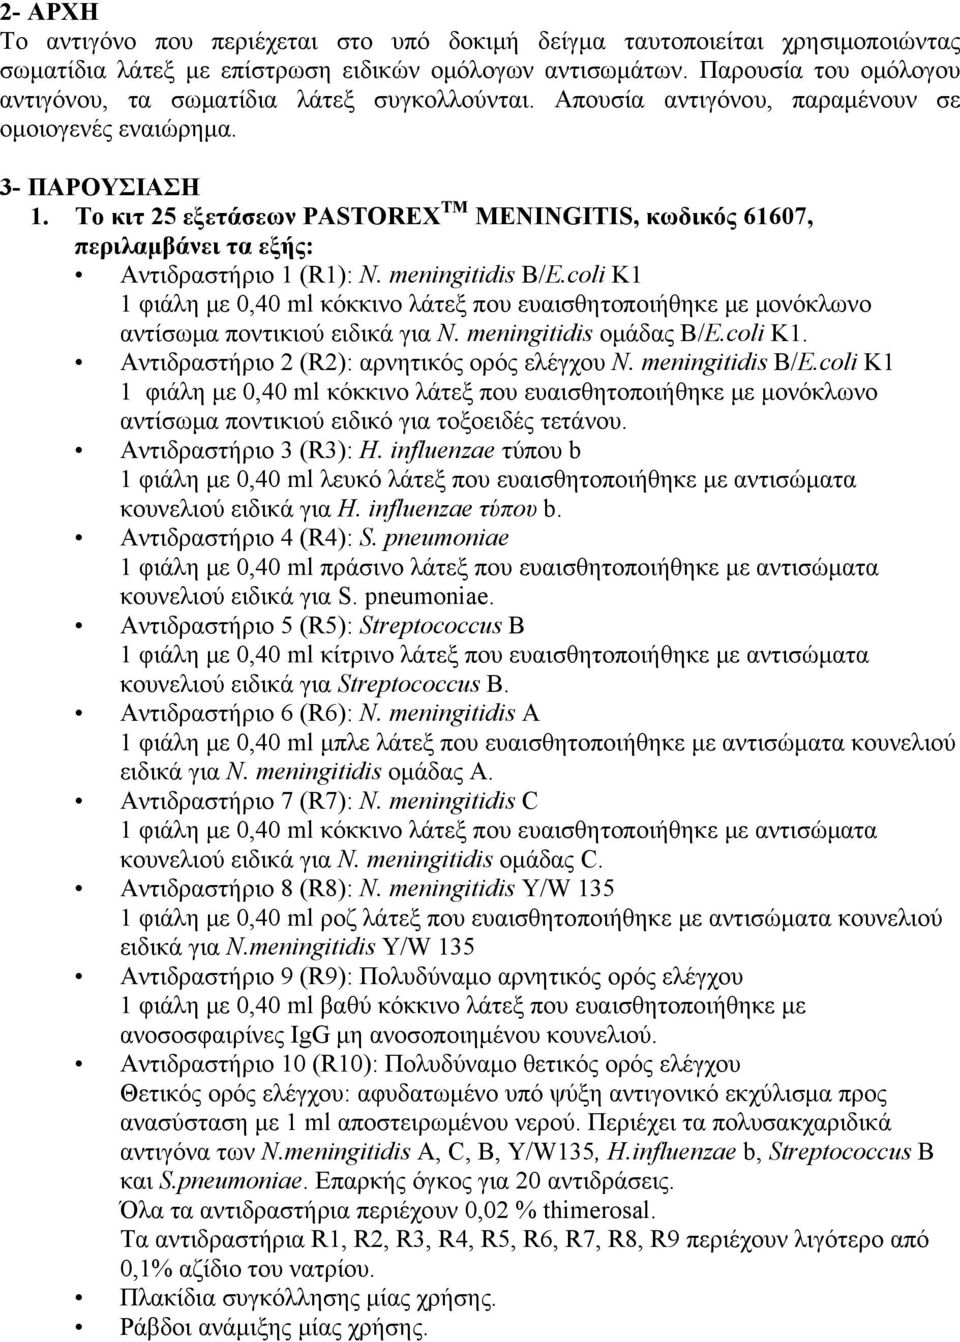 Το κιτ 25 εξετάσεων PASTOREX TM MENINGITIS, κωδικός 61607, περιλαμβάνει τα εξής: Αντιδραστήριο 1 (R1): N. meningitidis B/E.